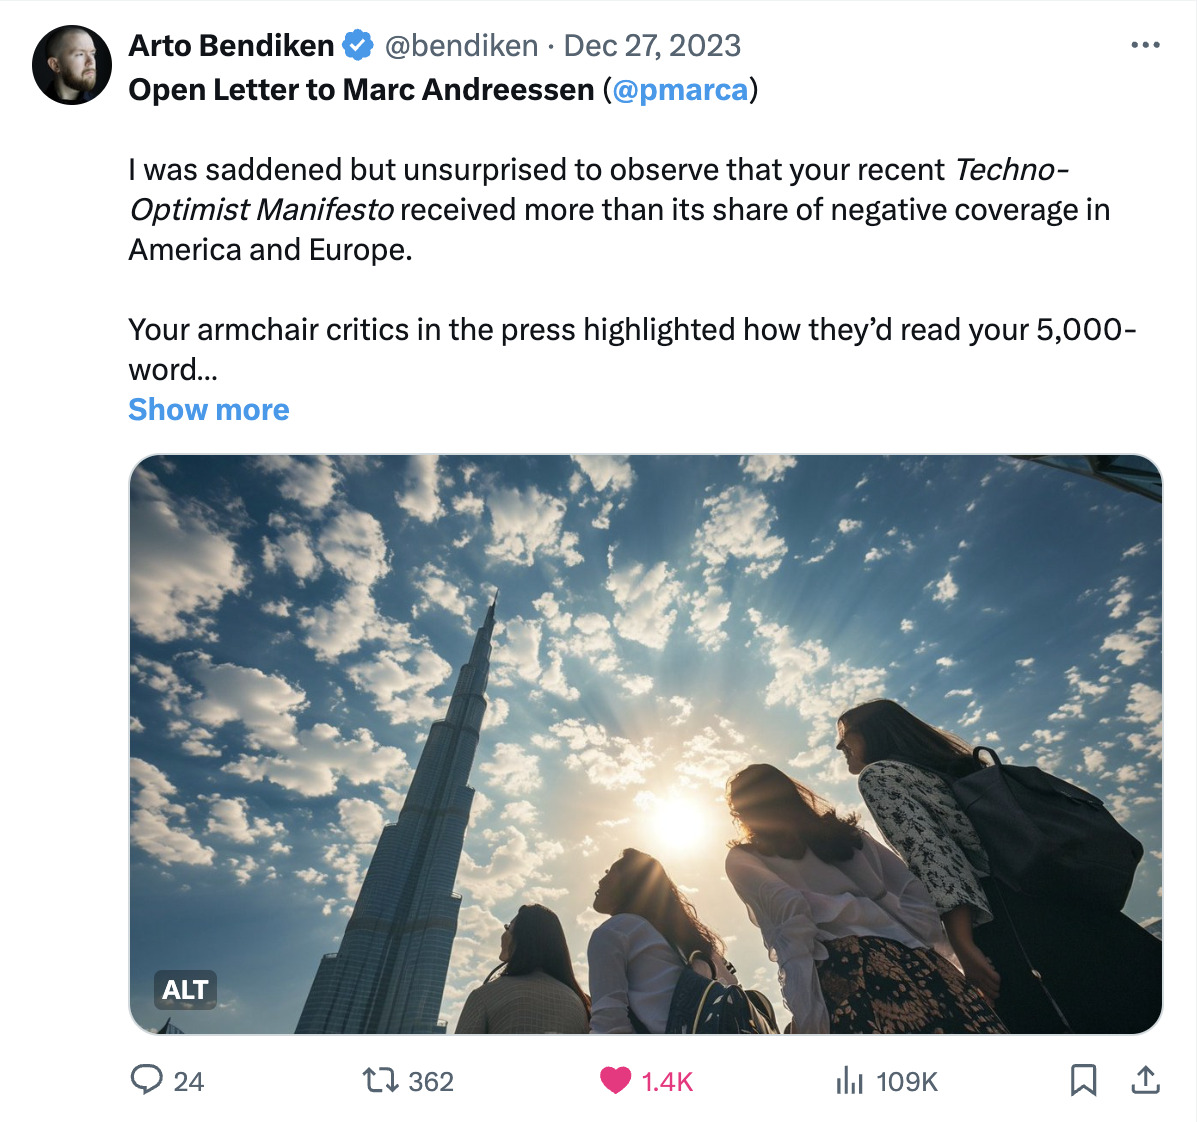 Screenshot of tweet by Arto Bendiken featuring his Open Letter to Marc Andreessen